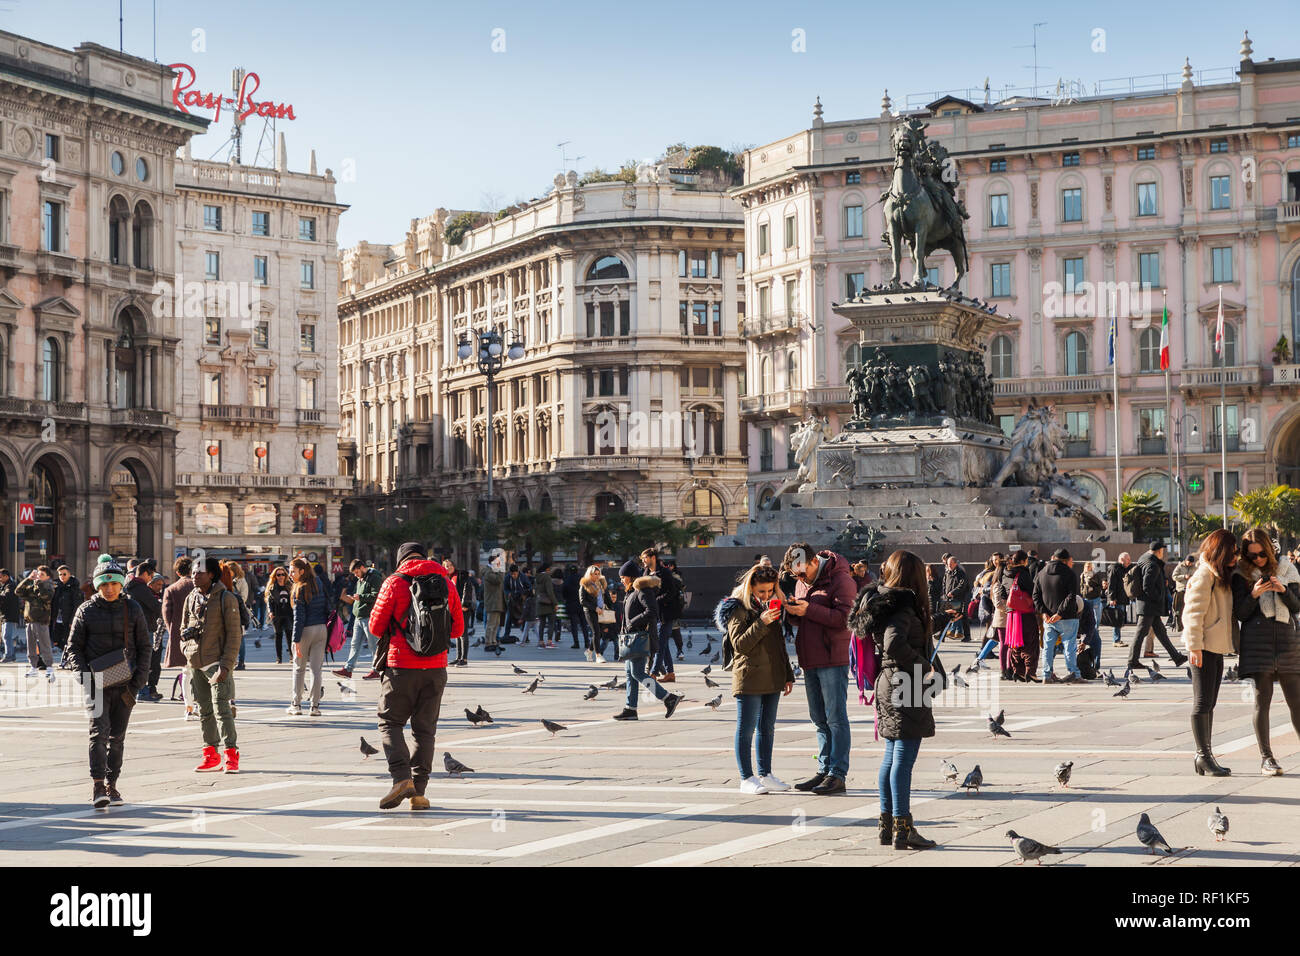 Milán, Italia - 19 de enero de 2018: Los turistas y gente de la calle a pie cerca del monumento al rey Victor Emmanuel II en la Piazza del Duomo Foto de stock